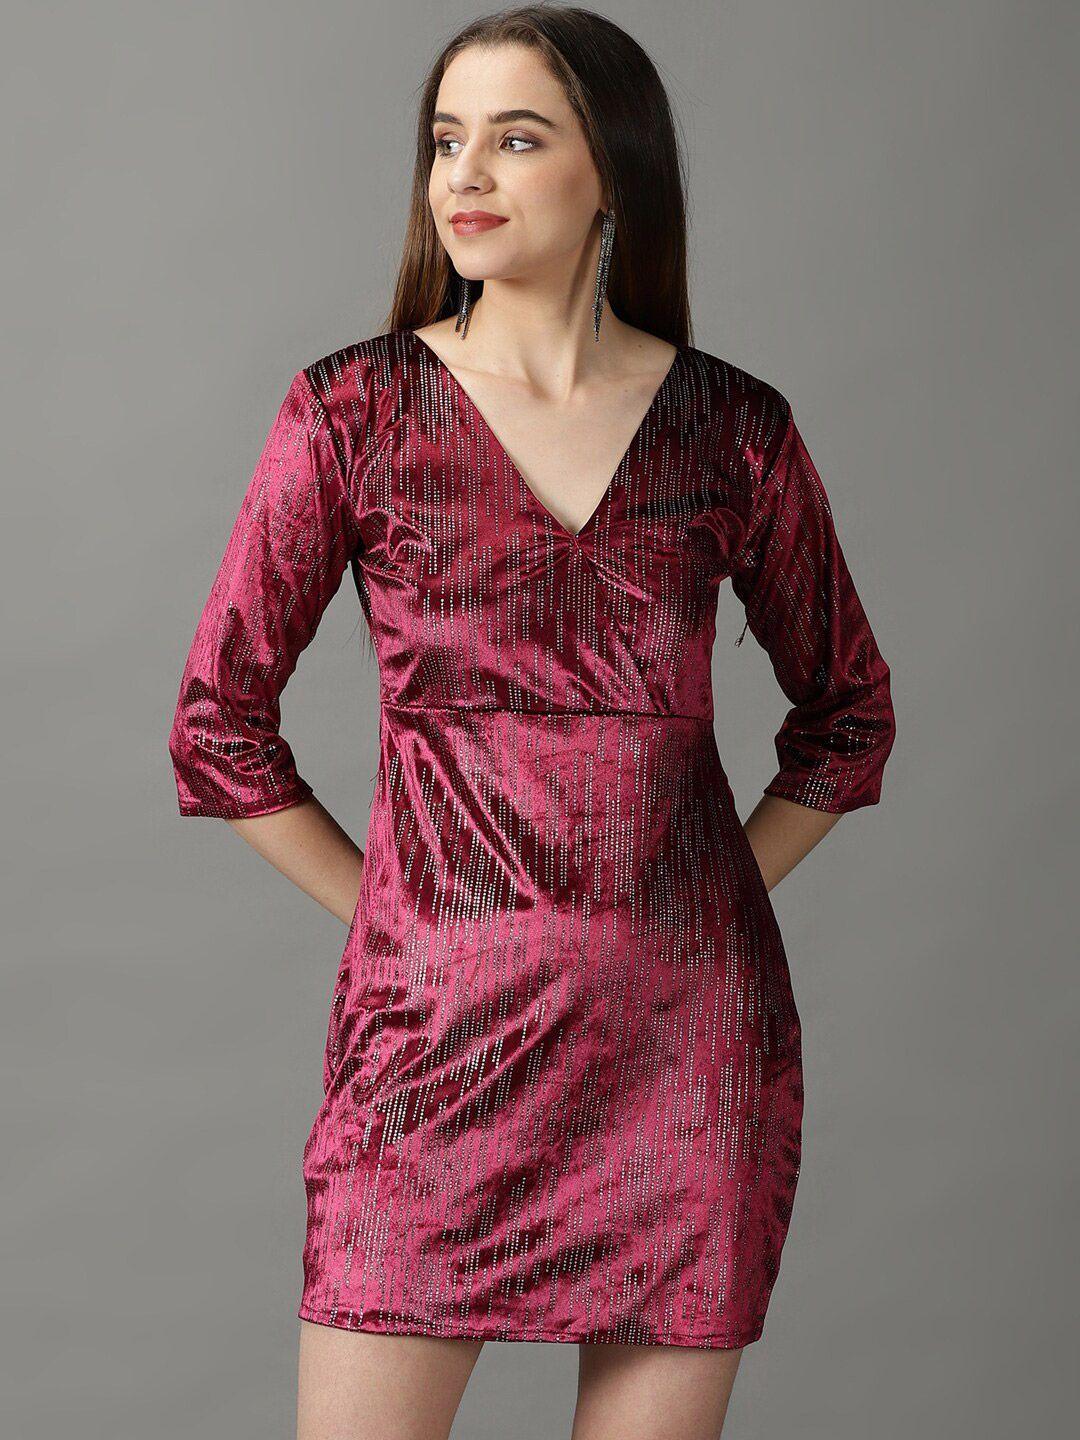 showoff embellished velvet sheath dress